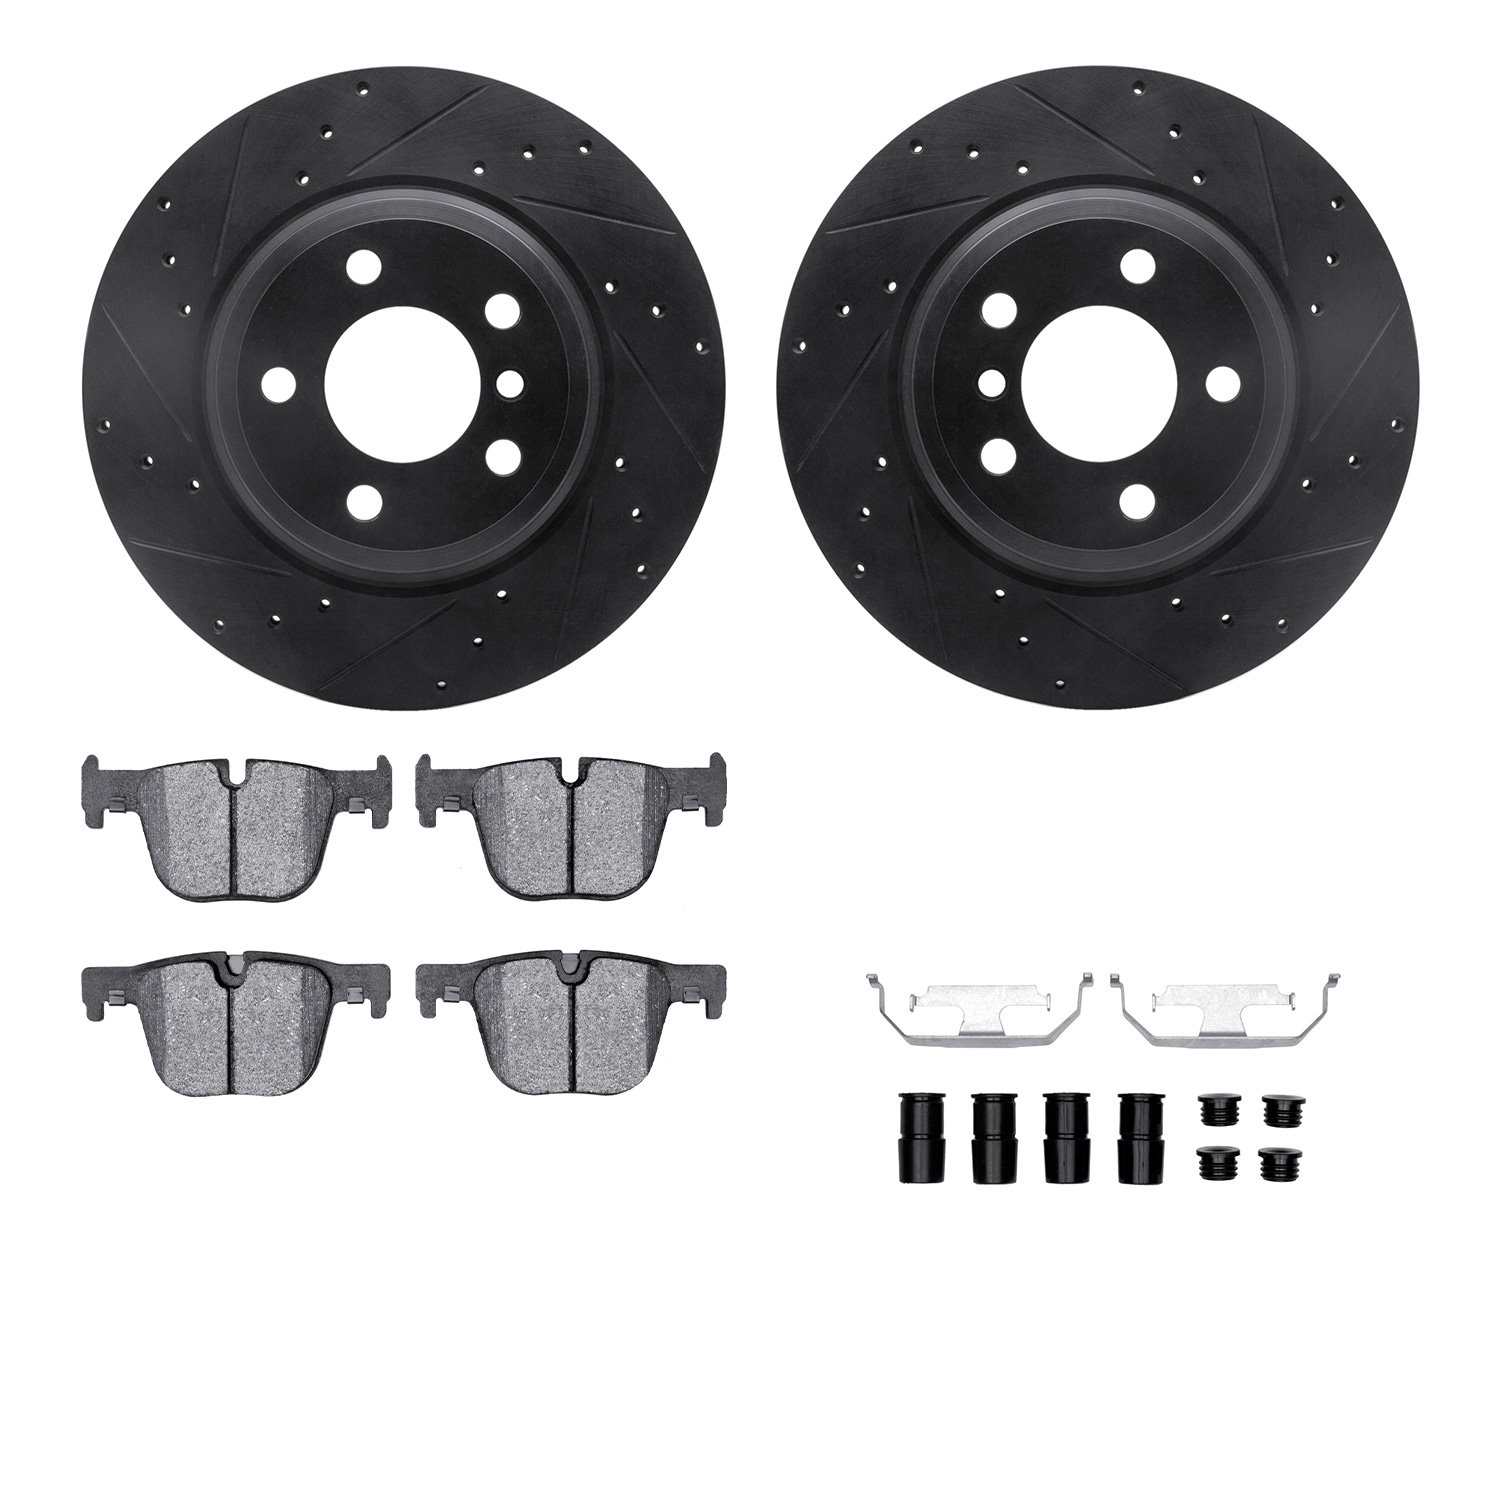 8612-31096 Drilled/Slotted Brake Rotors w/5000 Euro Ceramic Brake Pads Kit & Hardware [Black], 2012-2020 BMW, Position: Rear